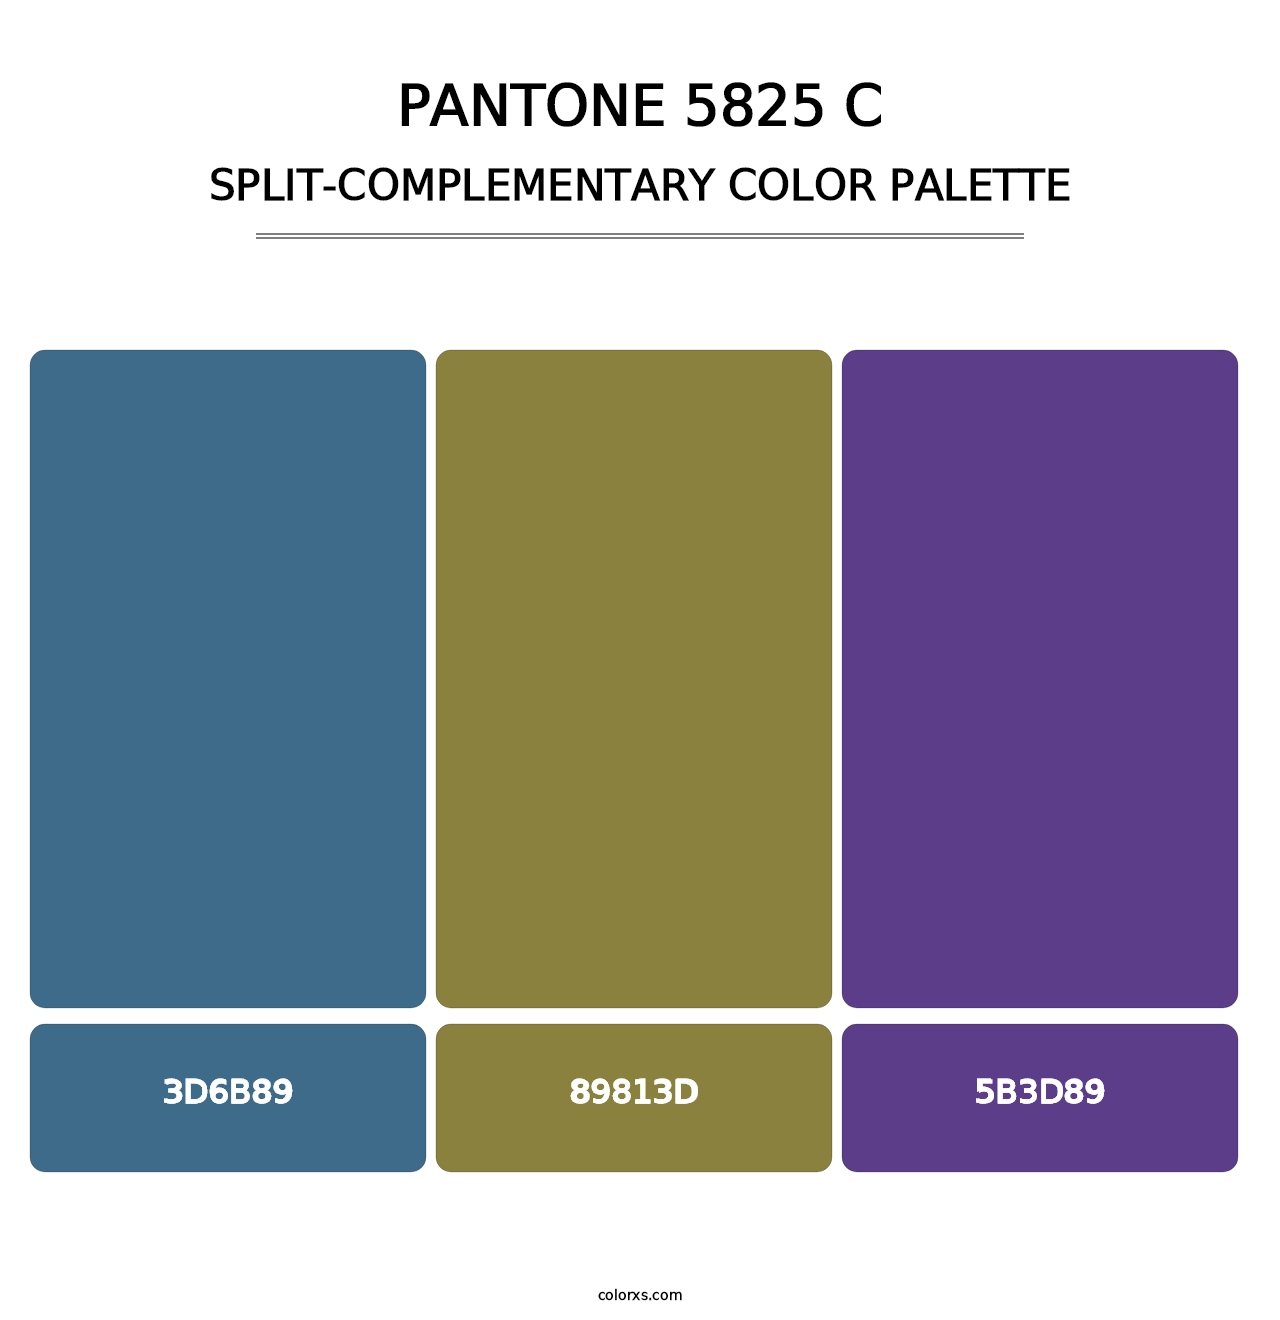 PANTONE 5825 C - Split-Complementary Color Palette